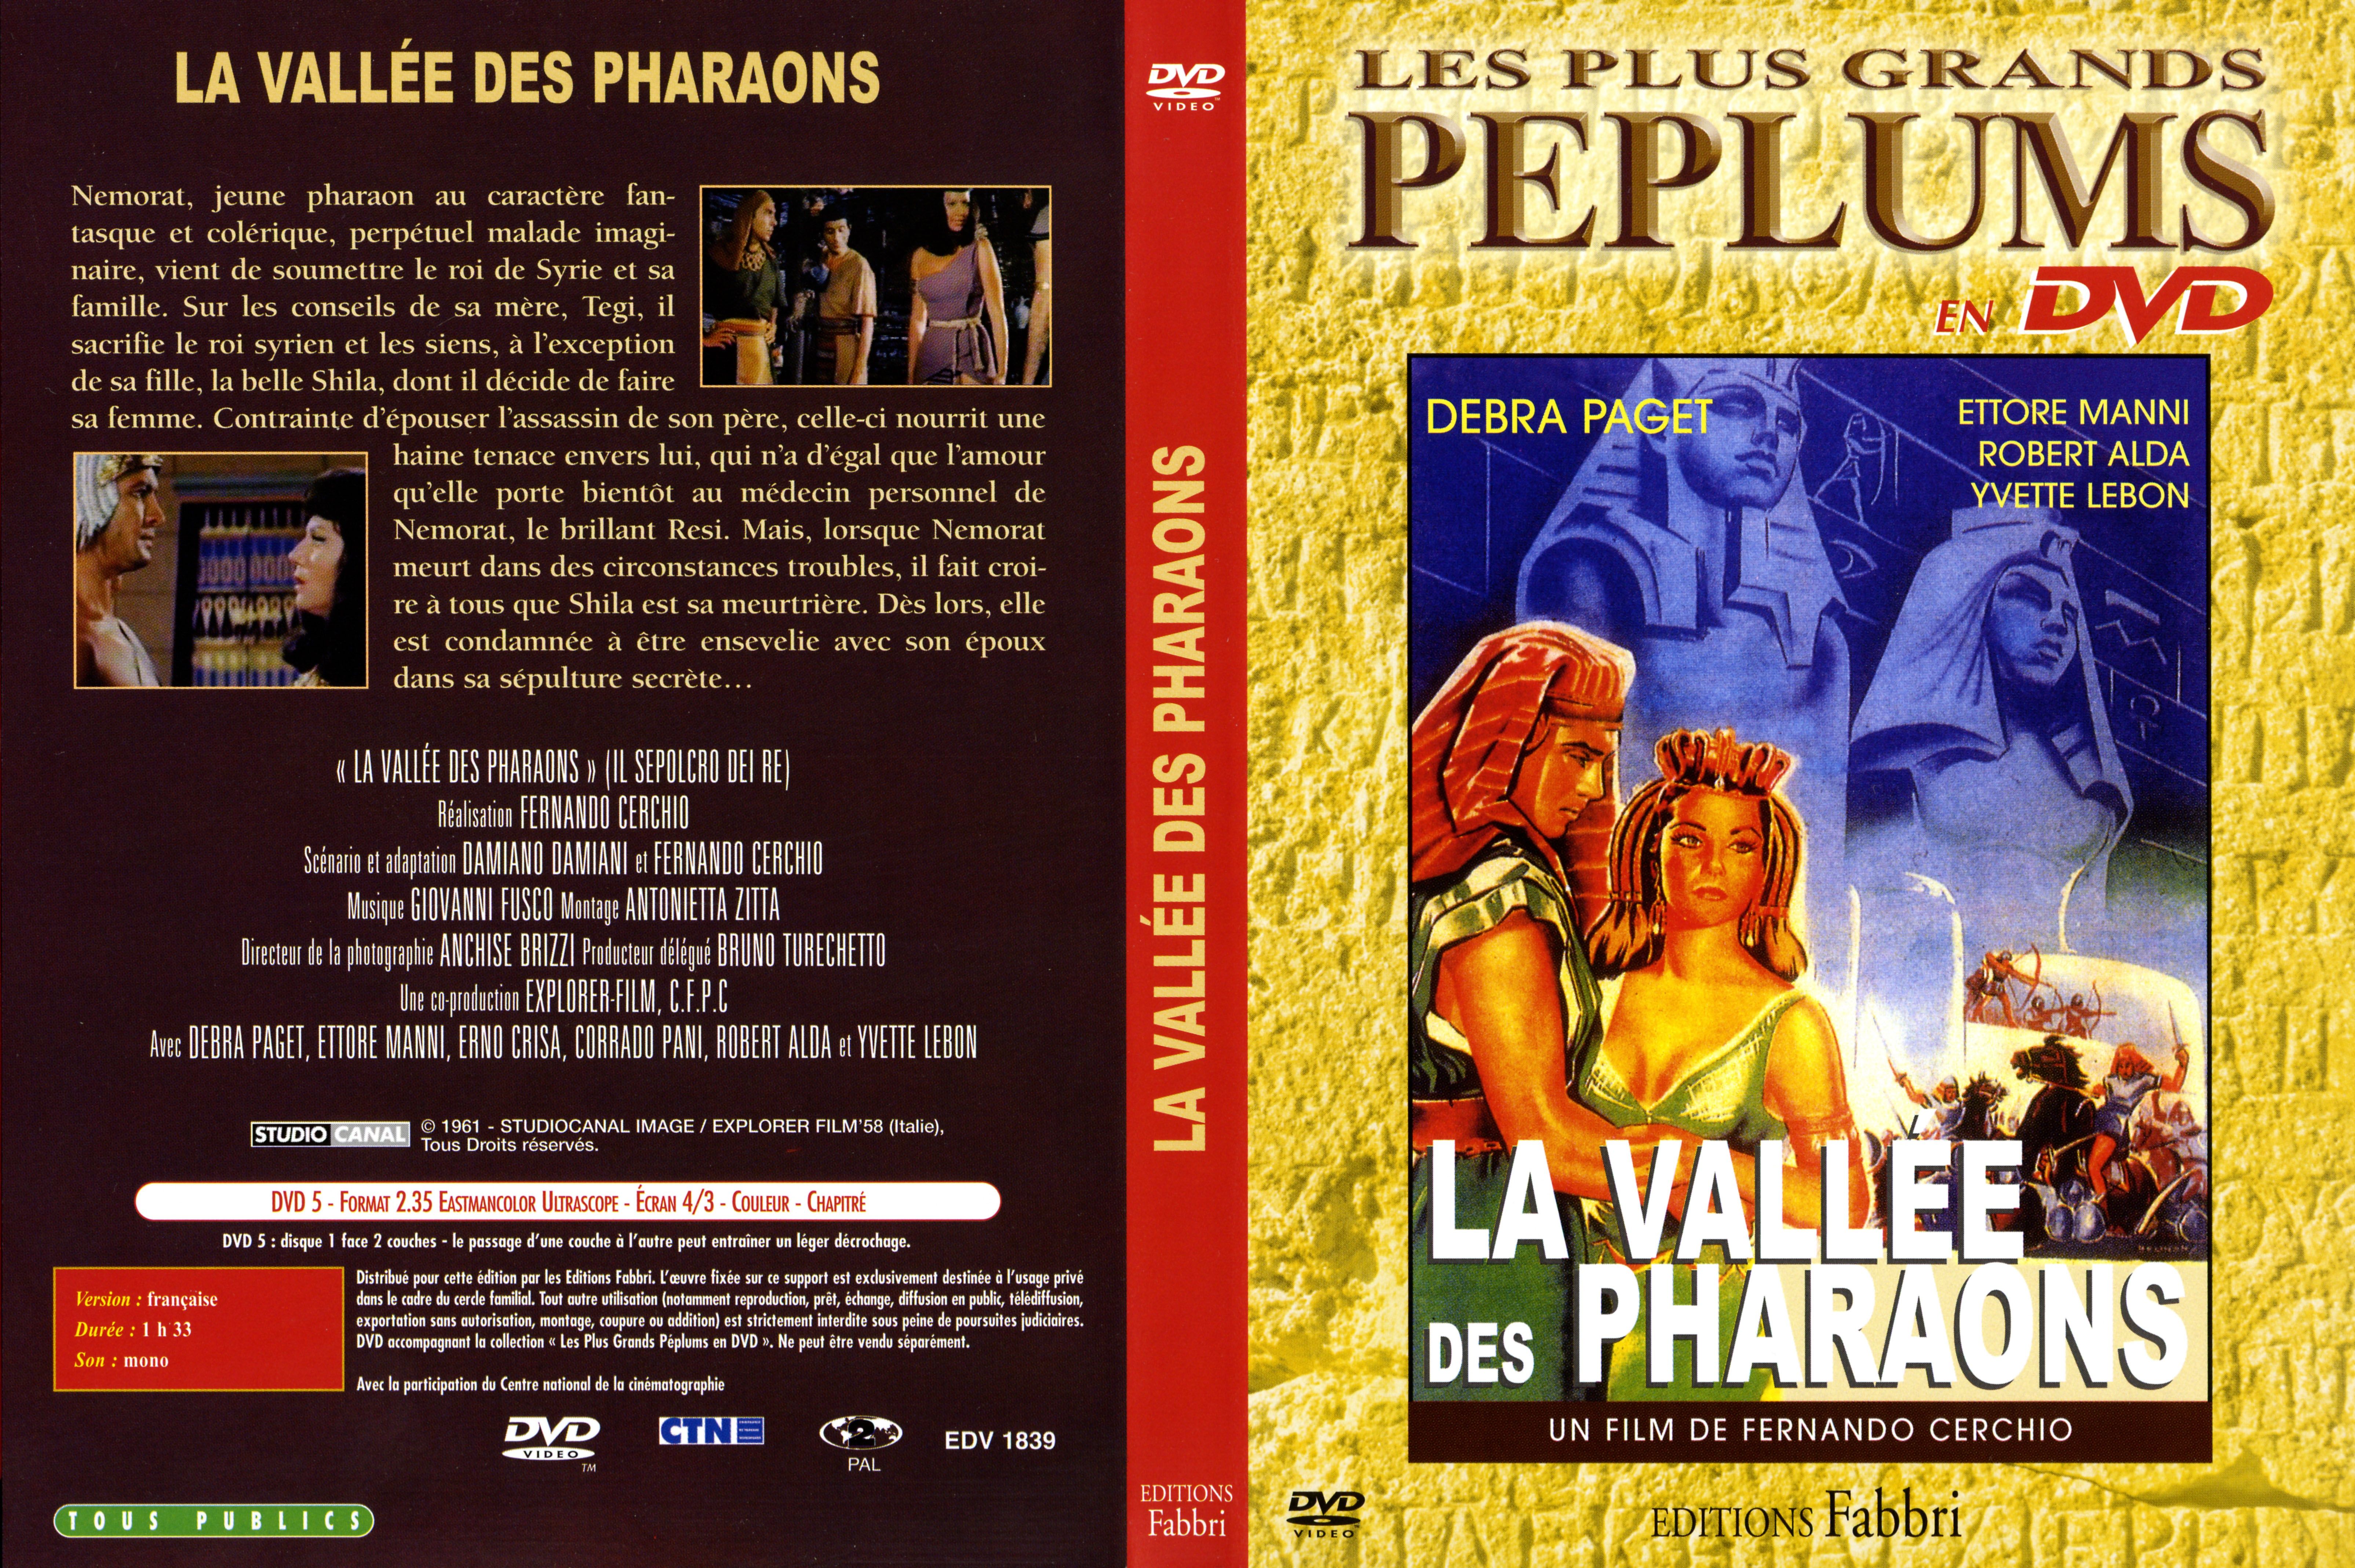 Jaquette DVD La valle des pharaons